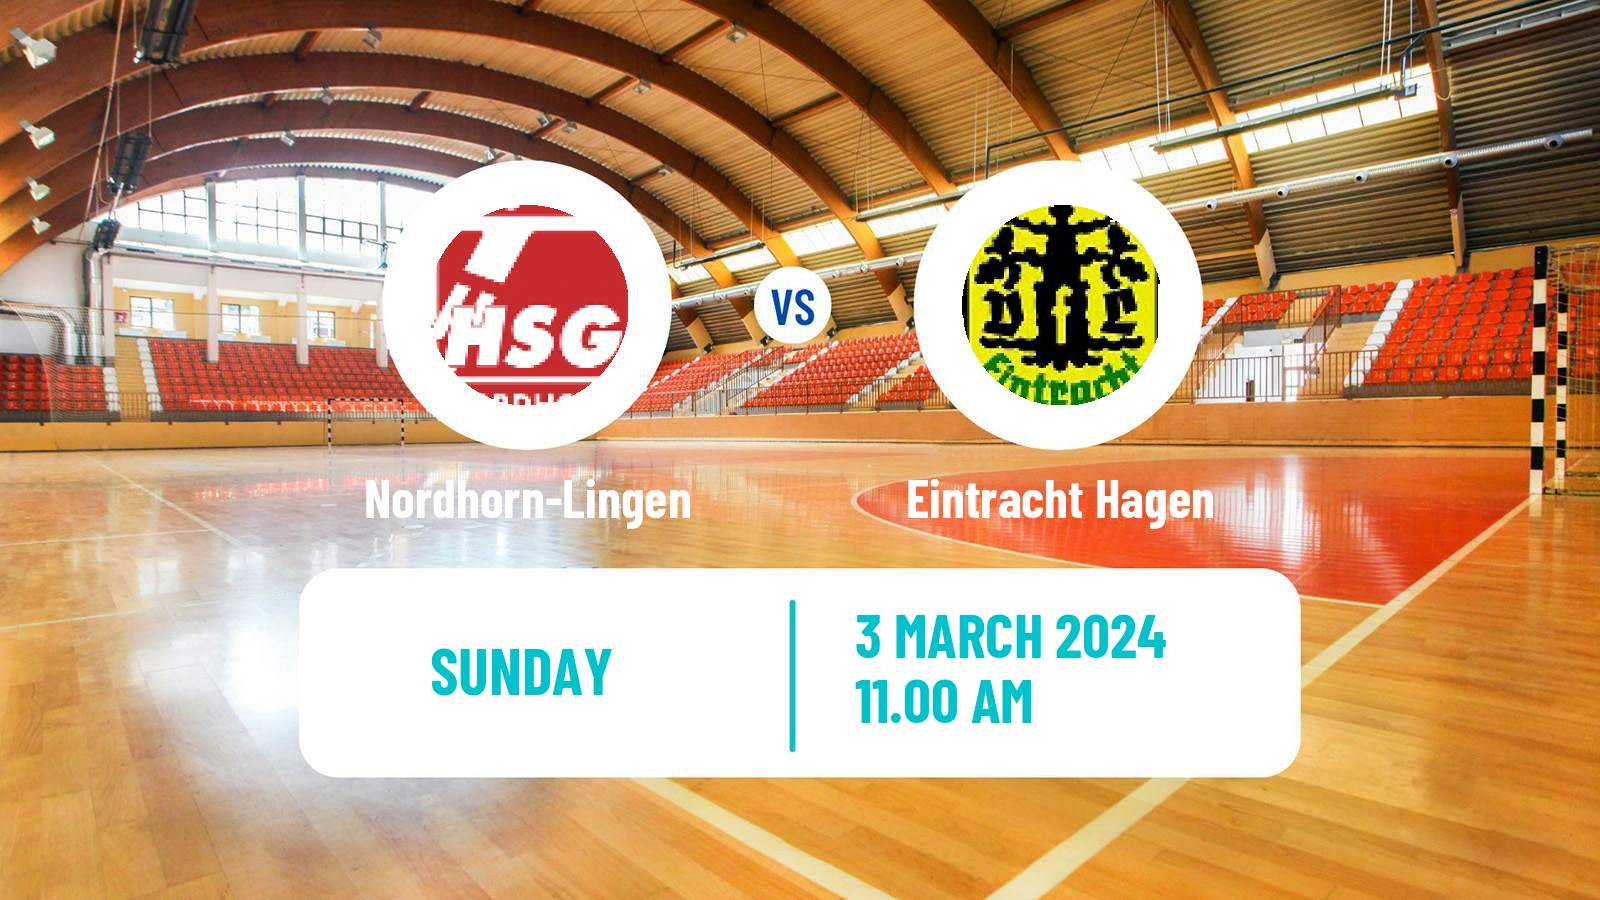 Handball German 2 Bundesliga Handball Nordhorn-Lingen - Eintracht Hagen